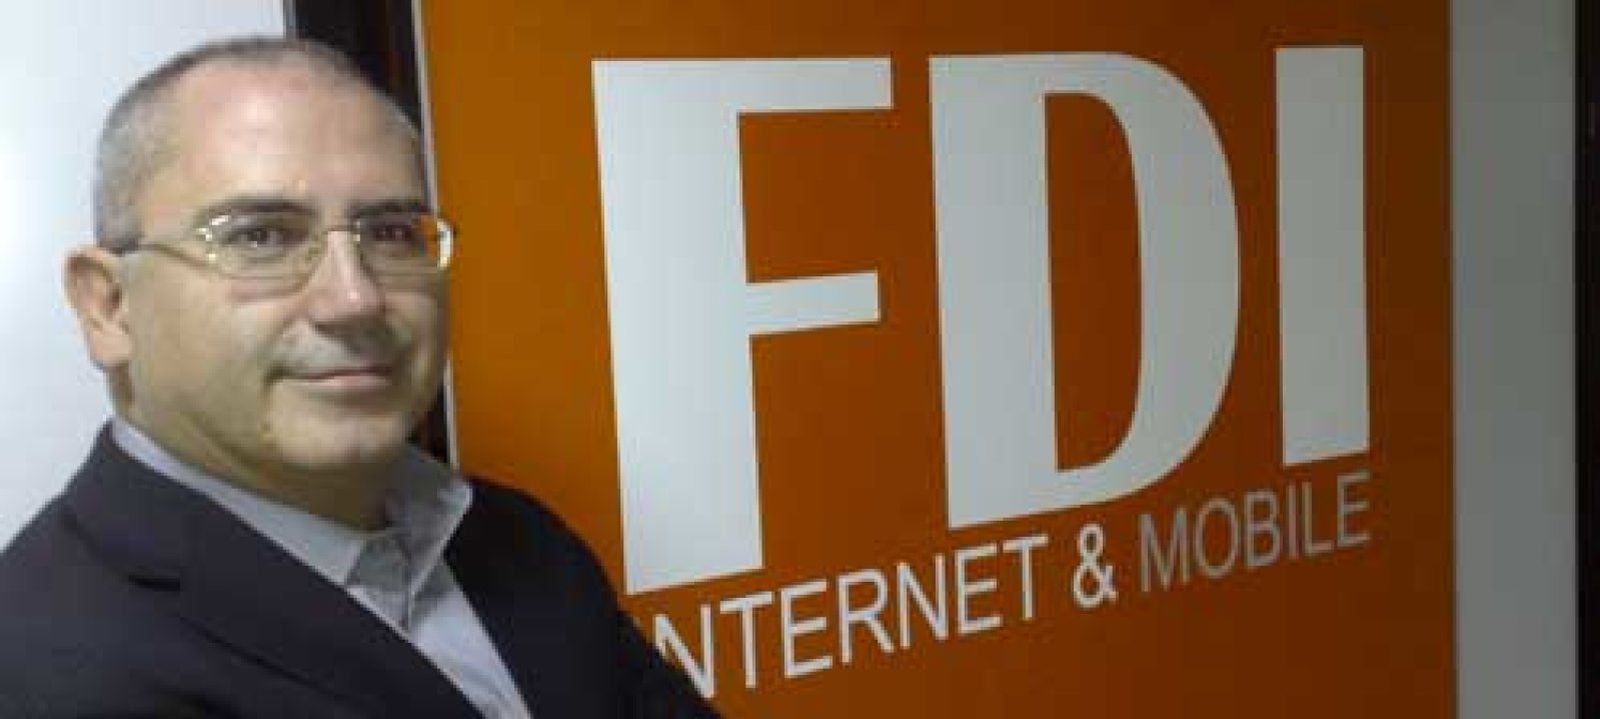 Foto: Gowex entra en FDI Internet & Mobile, que amplía su capital en 650.000 dólares